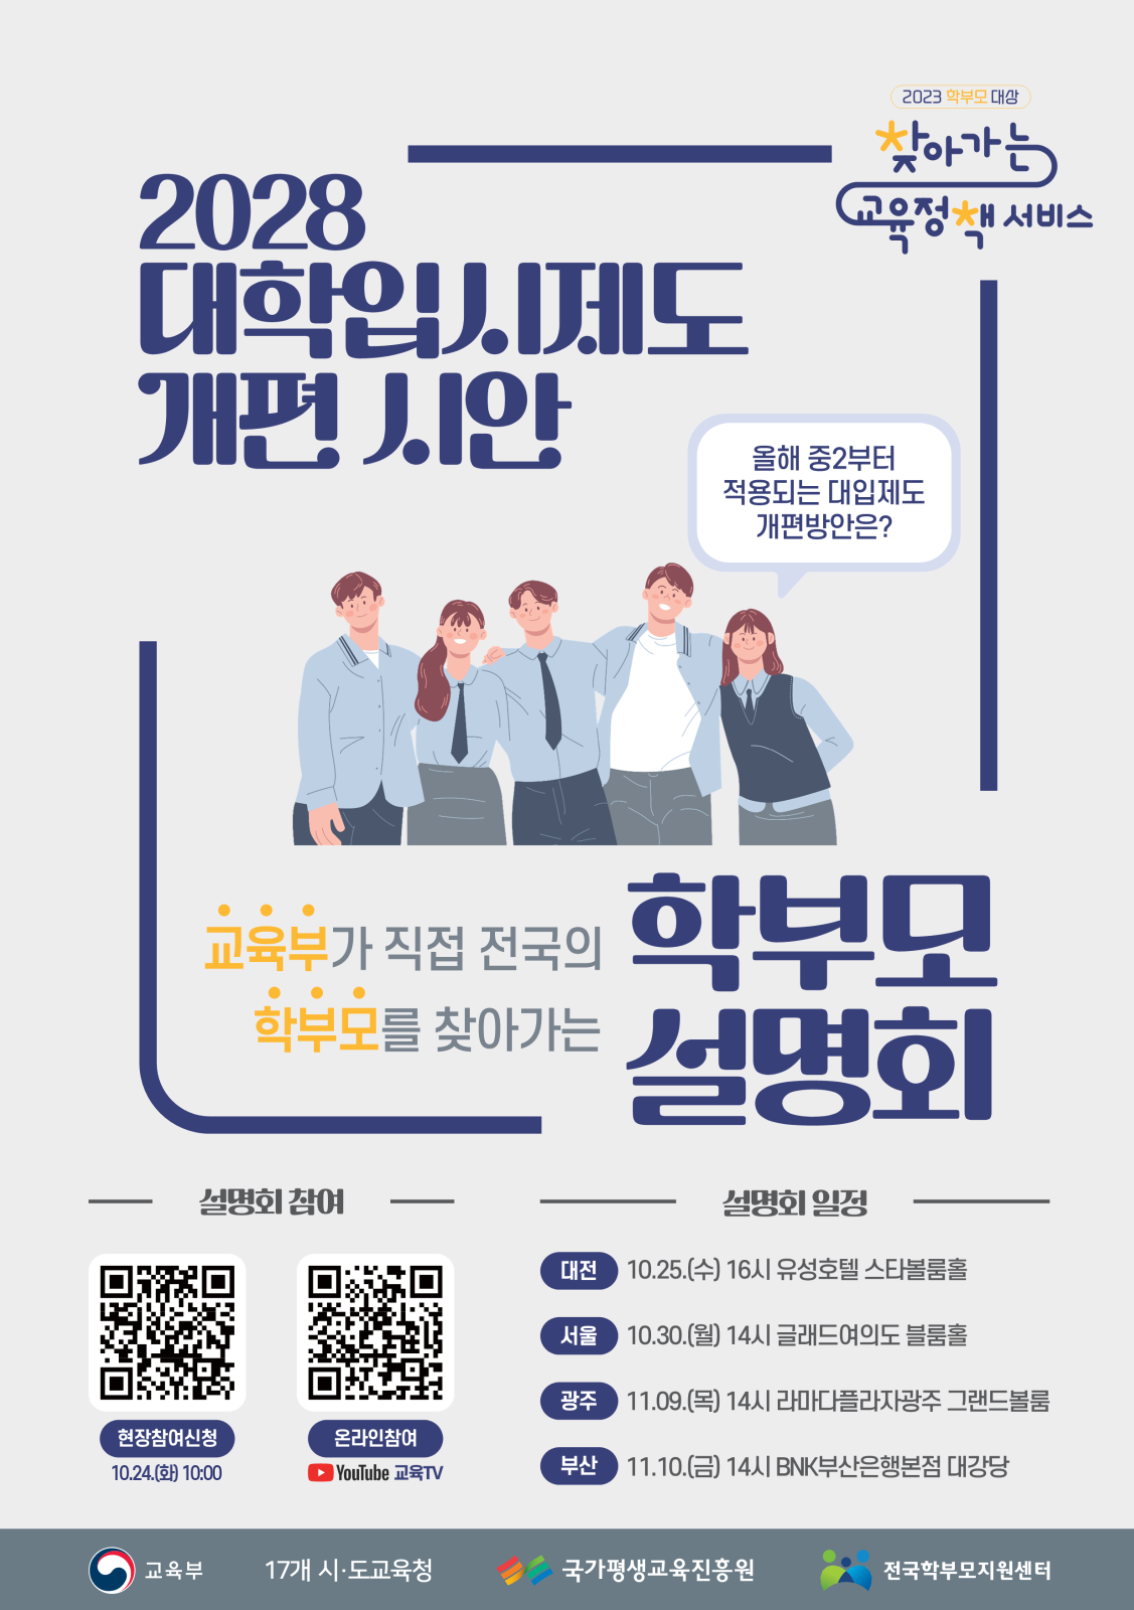 전라북도교육청 중등교육과_2028 대학입시제도 개편 시안 학부모 설명회 포스터